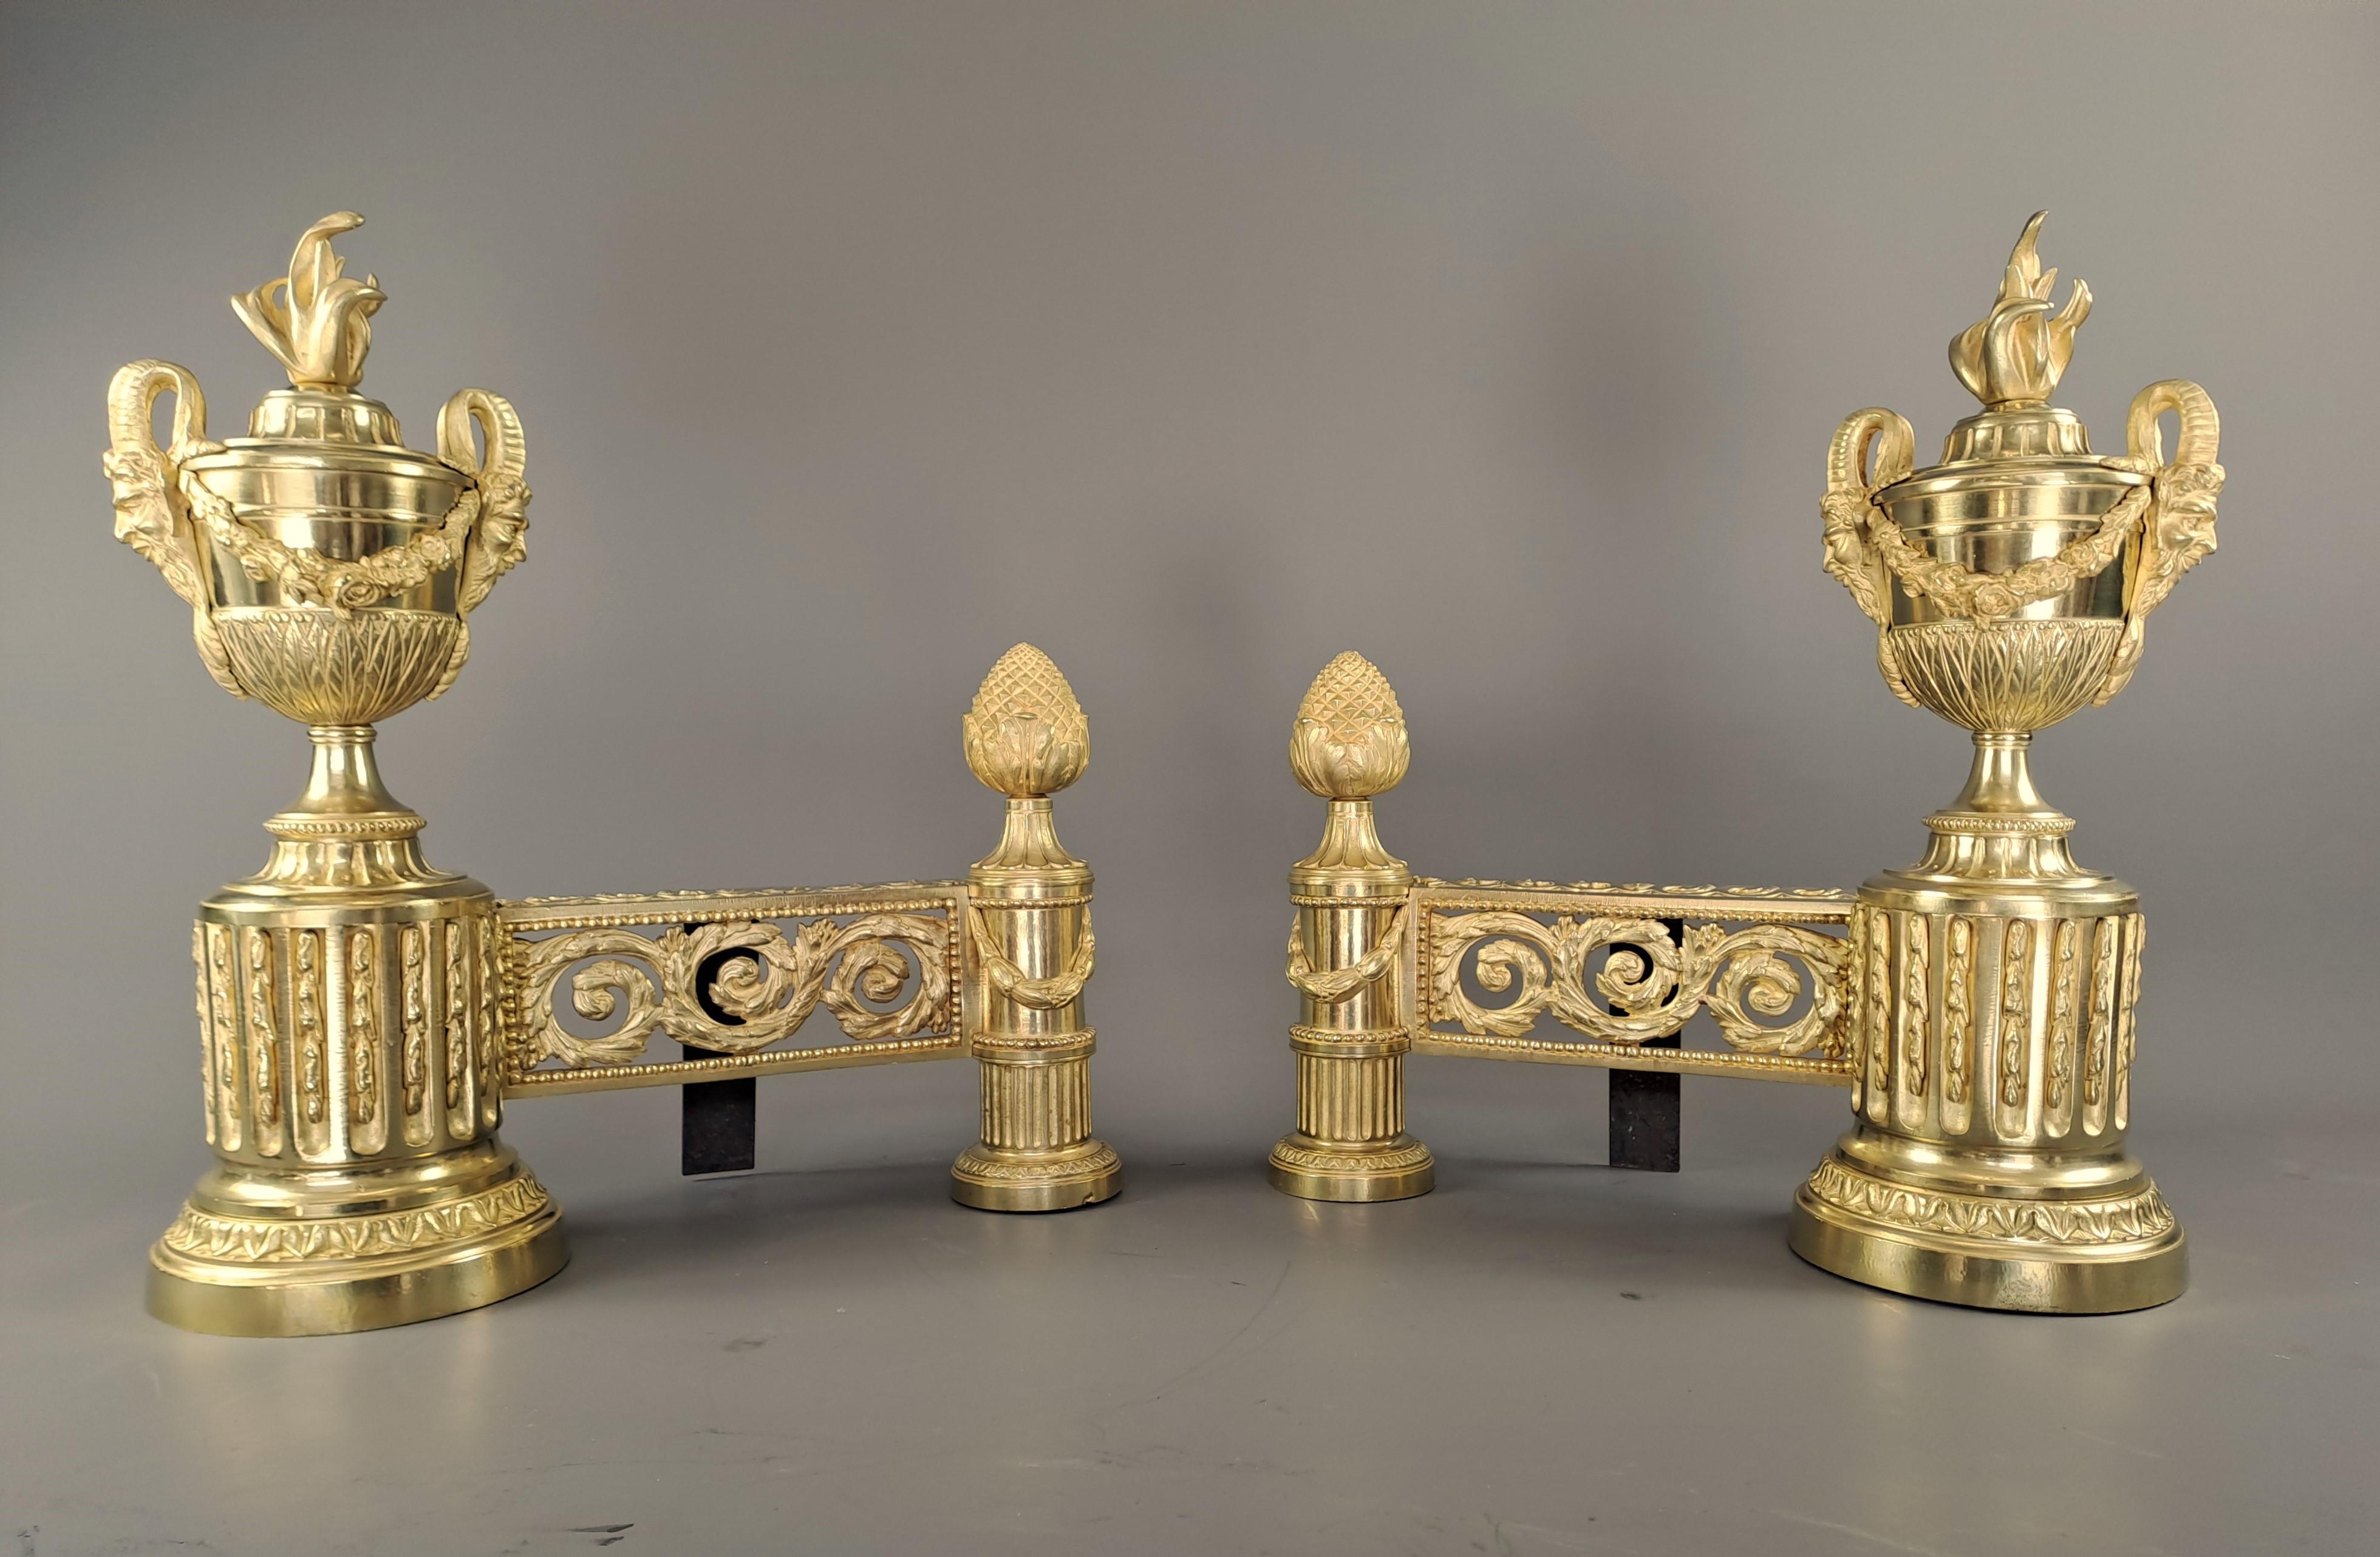 Hervorragendes Paar Andirons im Louis XVI-Stil aus sehr fein ziselierter, vergoldeter Bronze.

Prestigeträchtiges Modell mit einem zentralen Band, das aus durchbrochenem Rankenwerk auf der Vorderseite und einem Fries aus Ranken auf der Oberseite